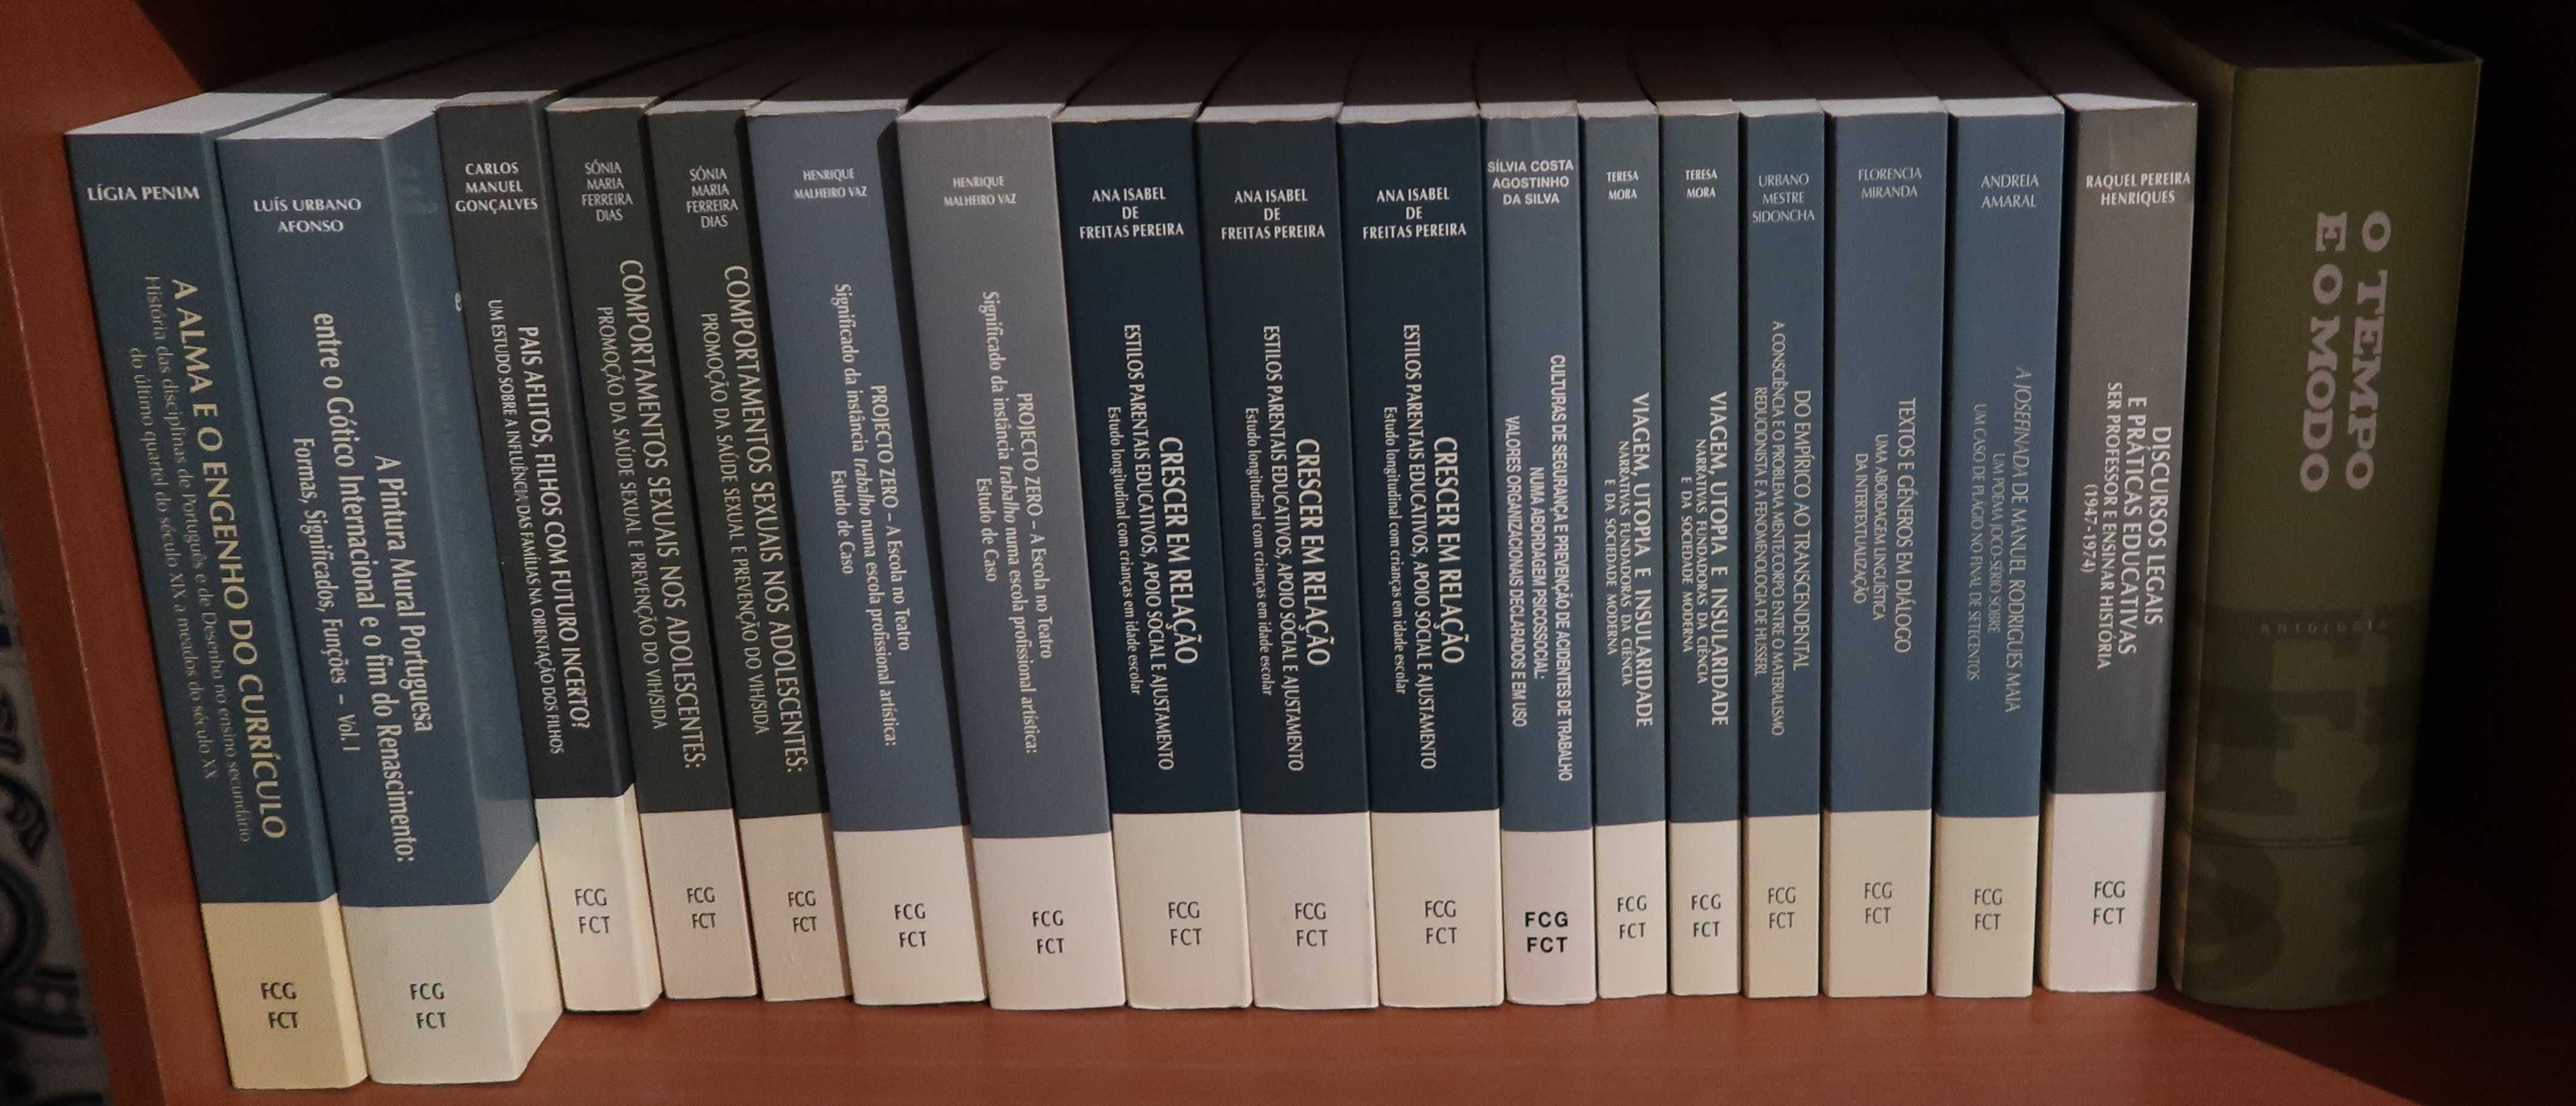 Livros Técnicos Fundação Calouste Gulbenkian, cada